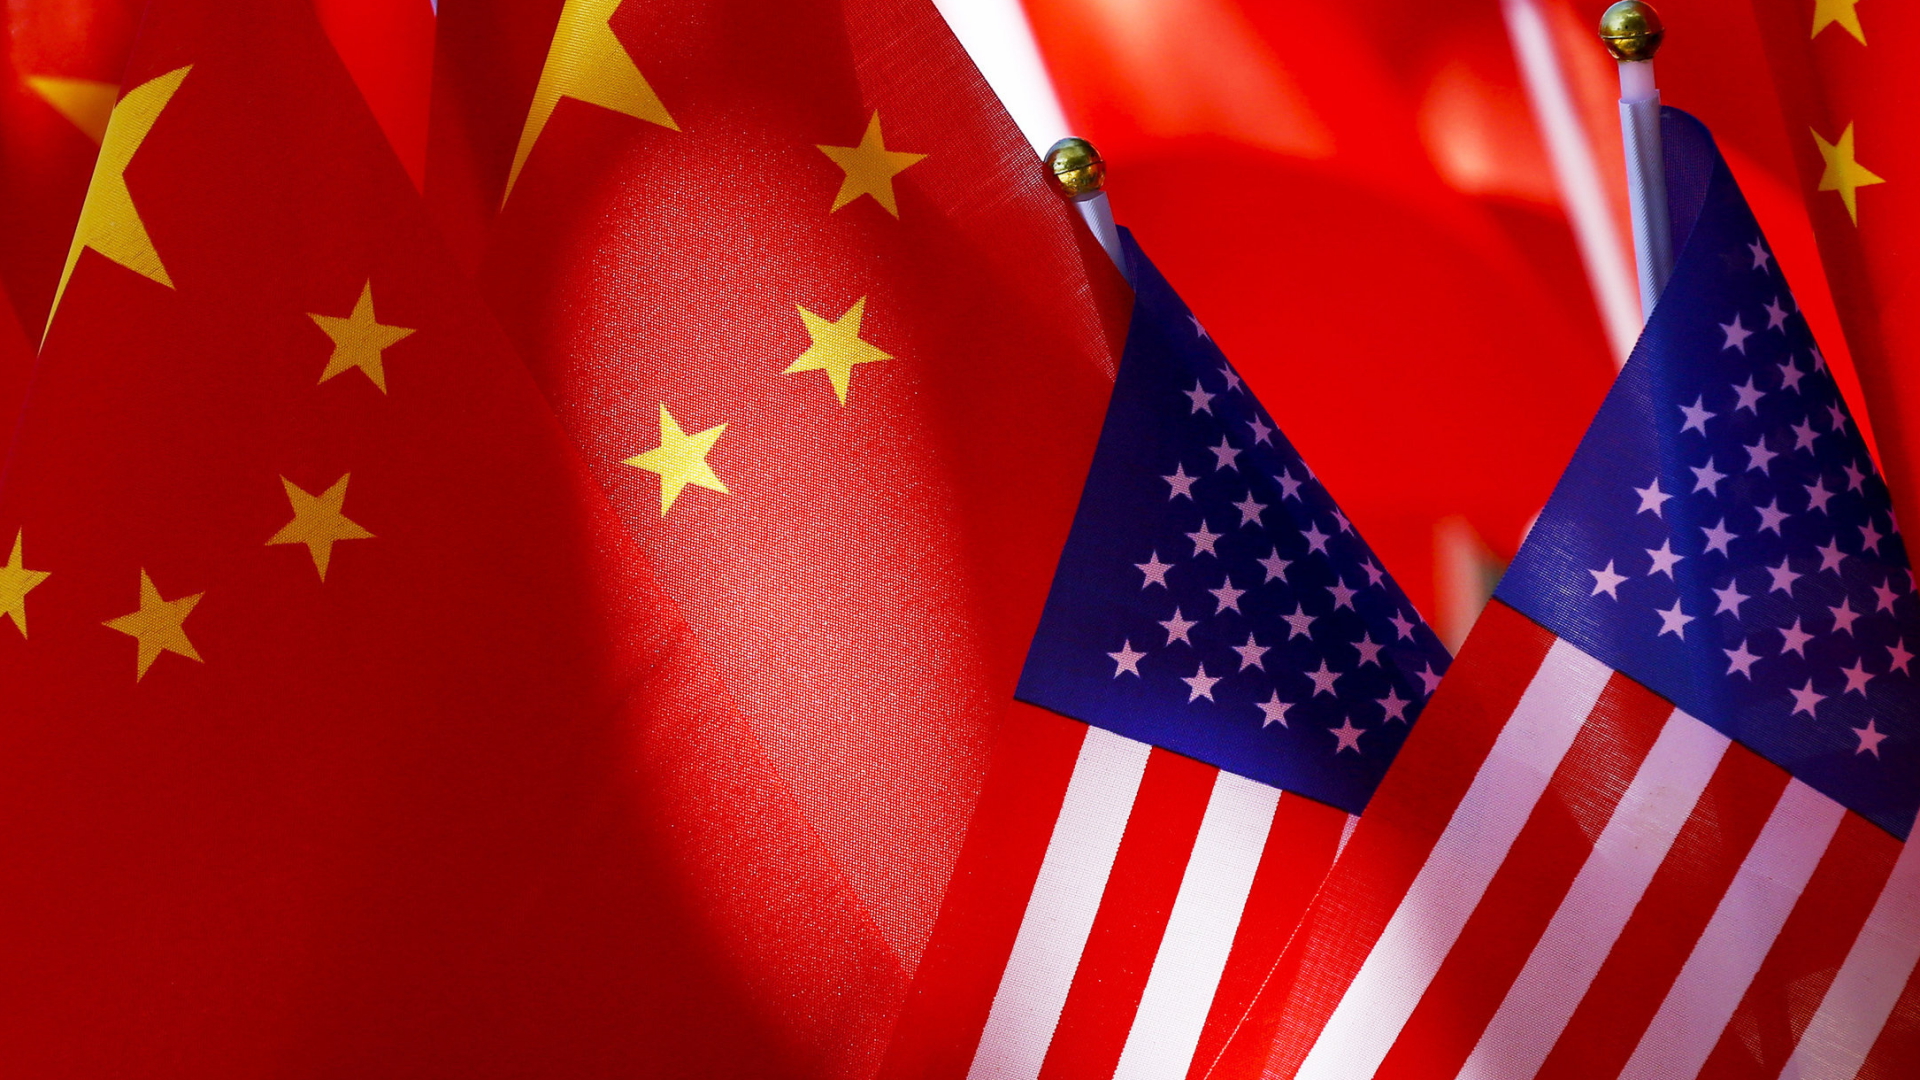 Flaggen der USA und Chinas